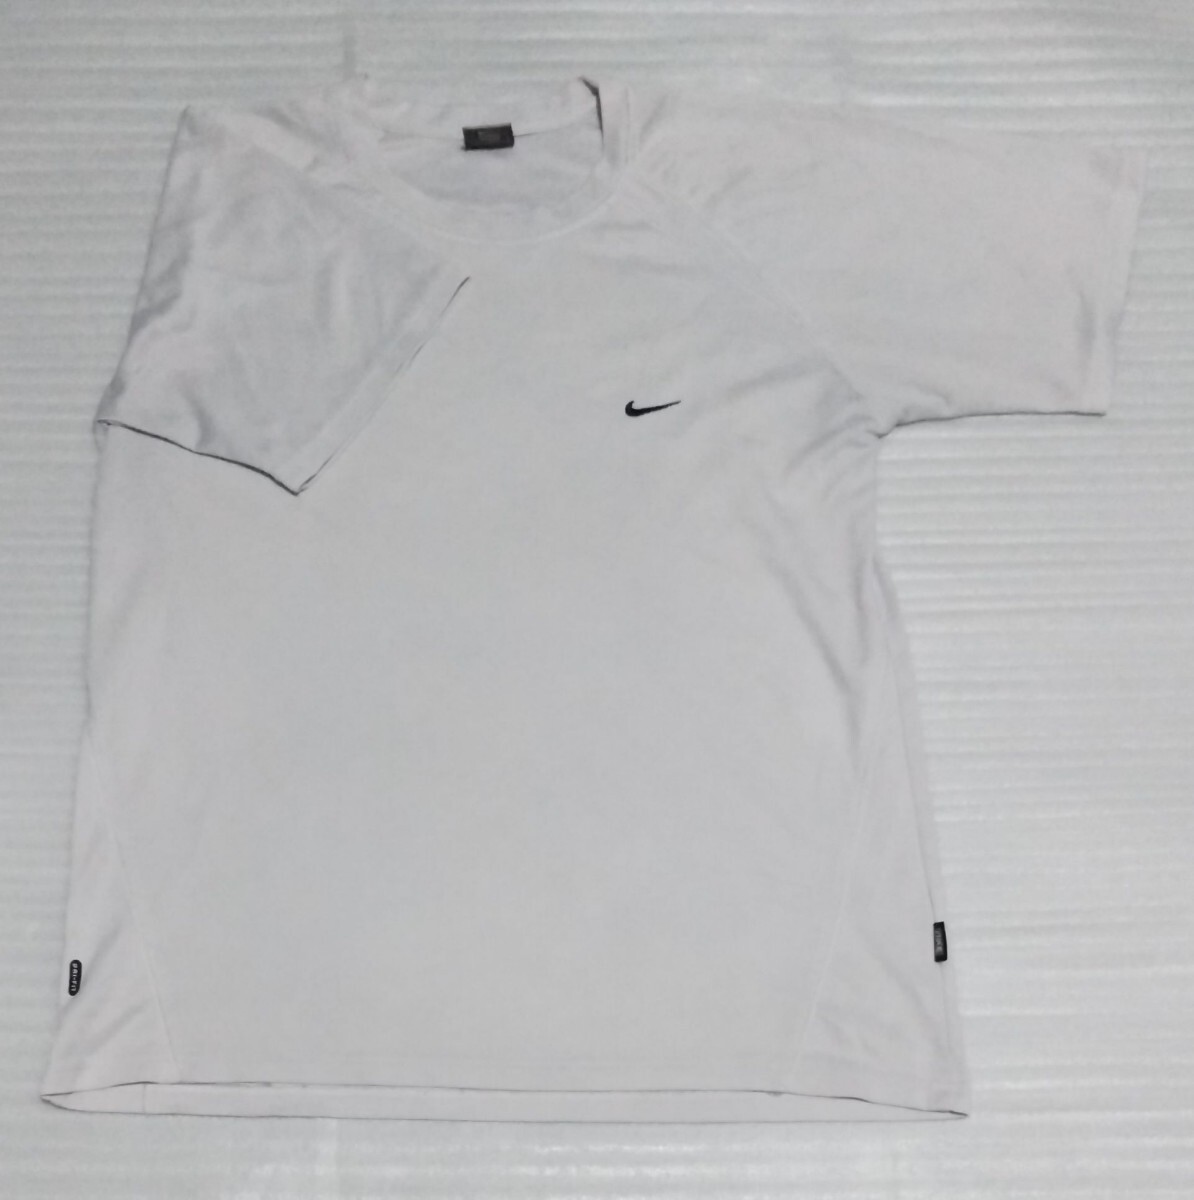 ☆NIKE.com ナイキ 半袖Tシャツ 大きなサイズ XL LL ストレッチ スポーツ ウェア ティー グレイGLAYブラック黒DRI-FITメッシュ 身幅 約54cmの画像1